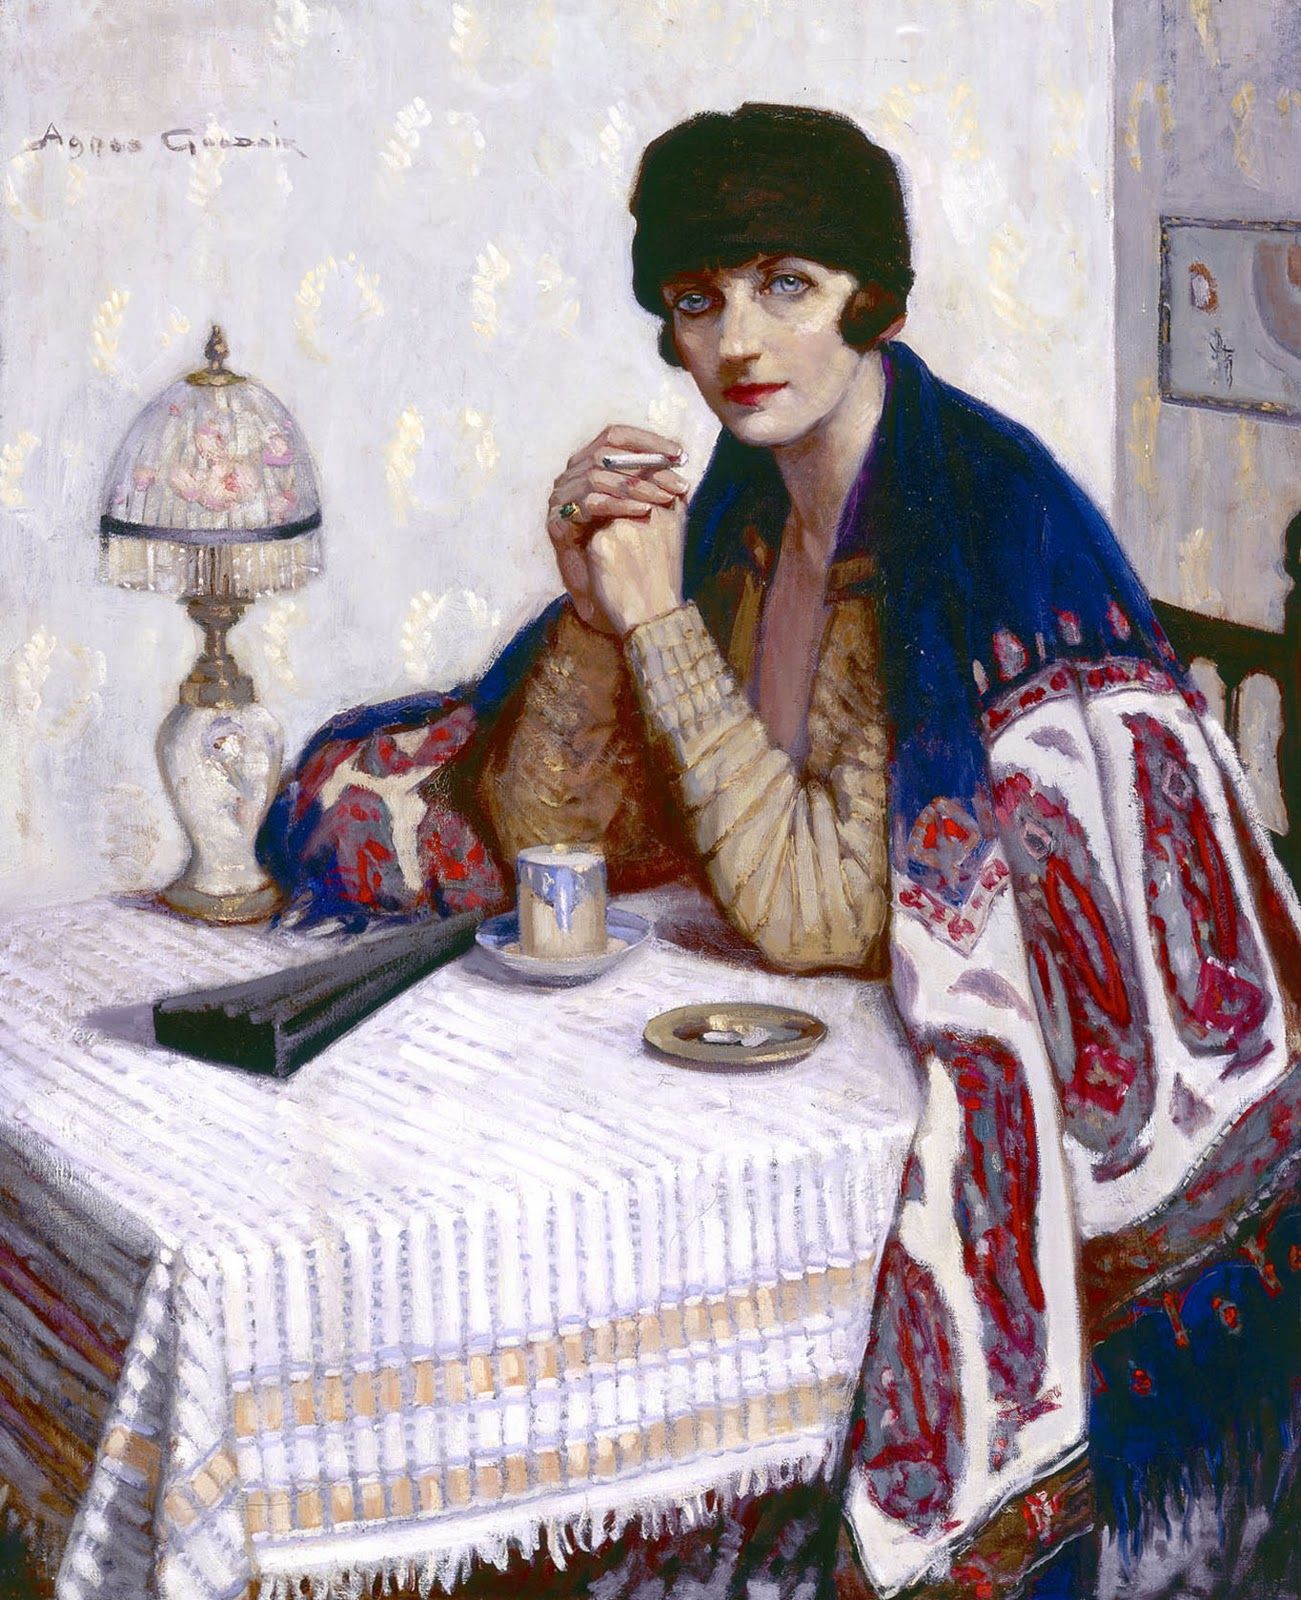 Moça com Cigarro by Agnes Goodsir - 1925 coleção privada